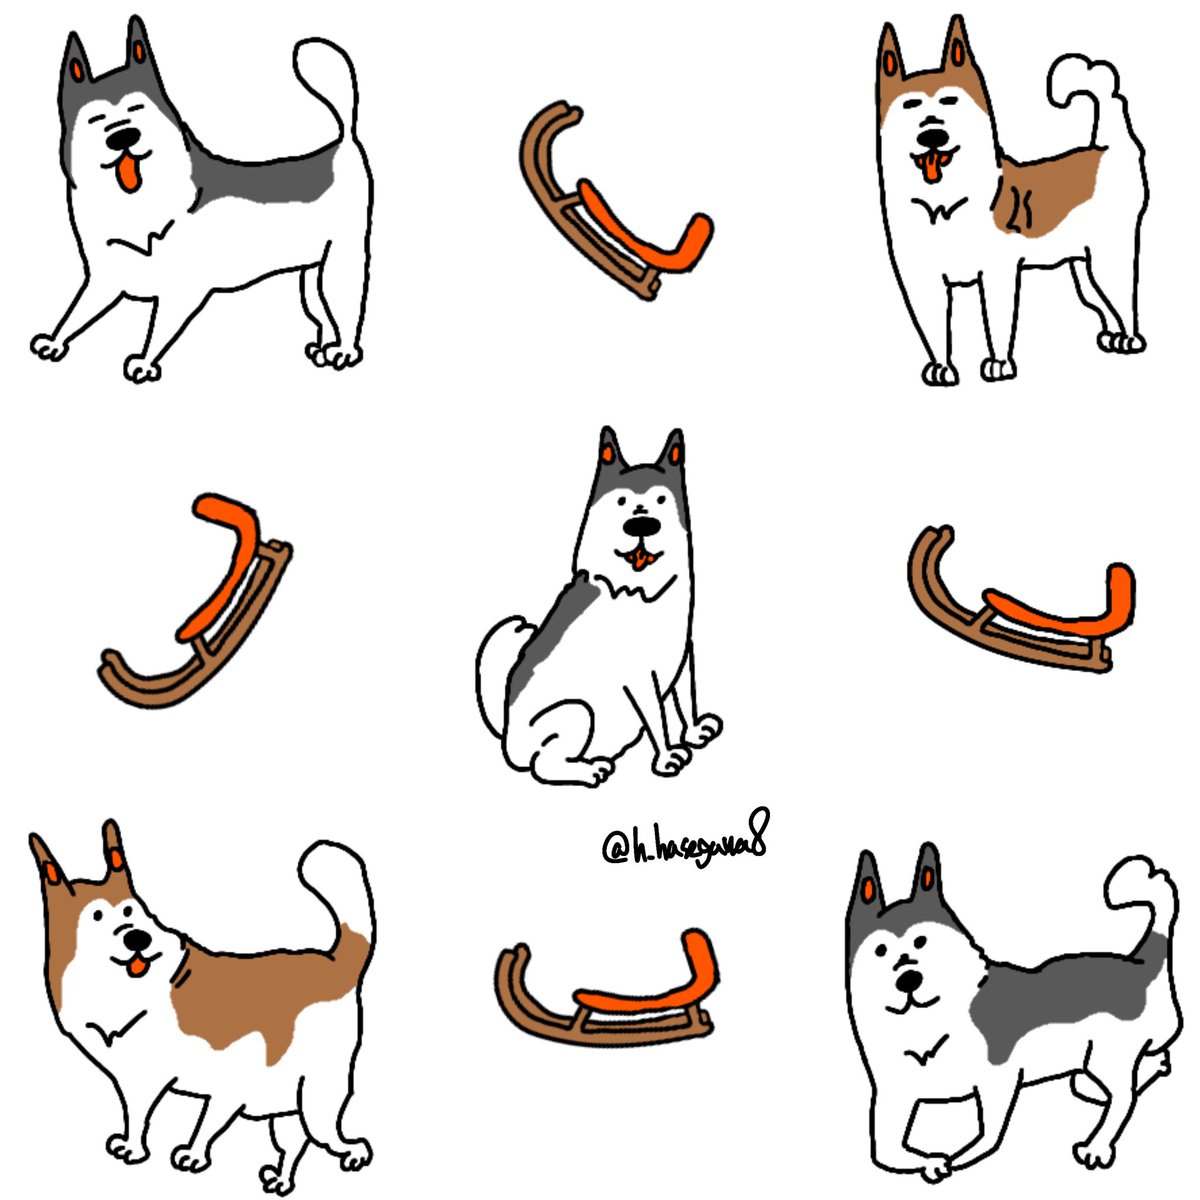 O Xrhsths ハセガワ イラストレーター Sto Twitter Suzuriでシベリアンハスキーのロンtを買ってくれた人ありがとうございます 自分が描いたイラストだからすごく嬉しいです 犬をはじめ他の動物イラストもグッズにしています リンクから是非 T Co